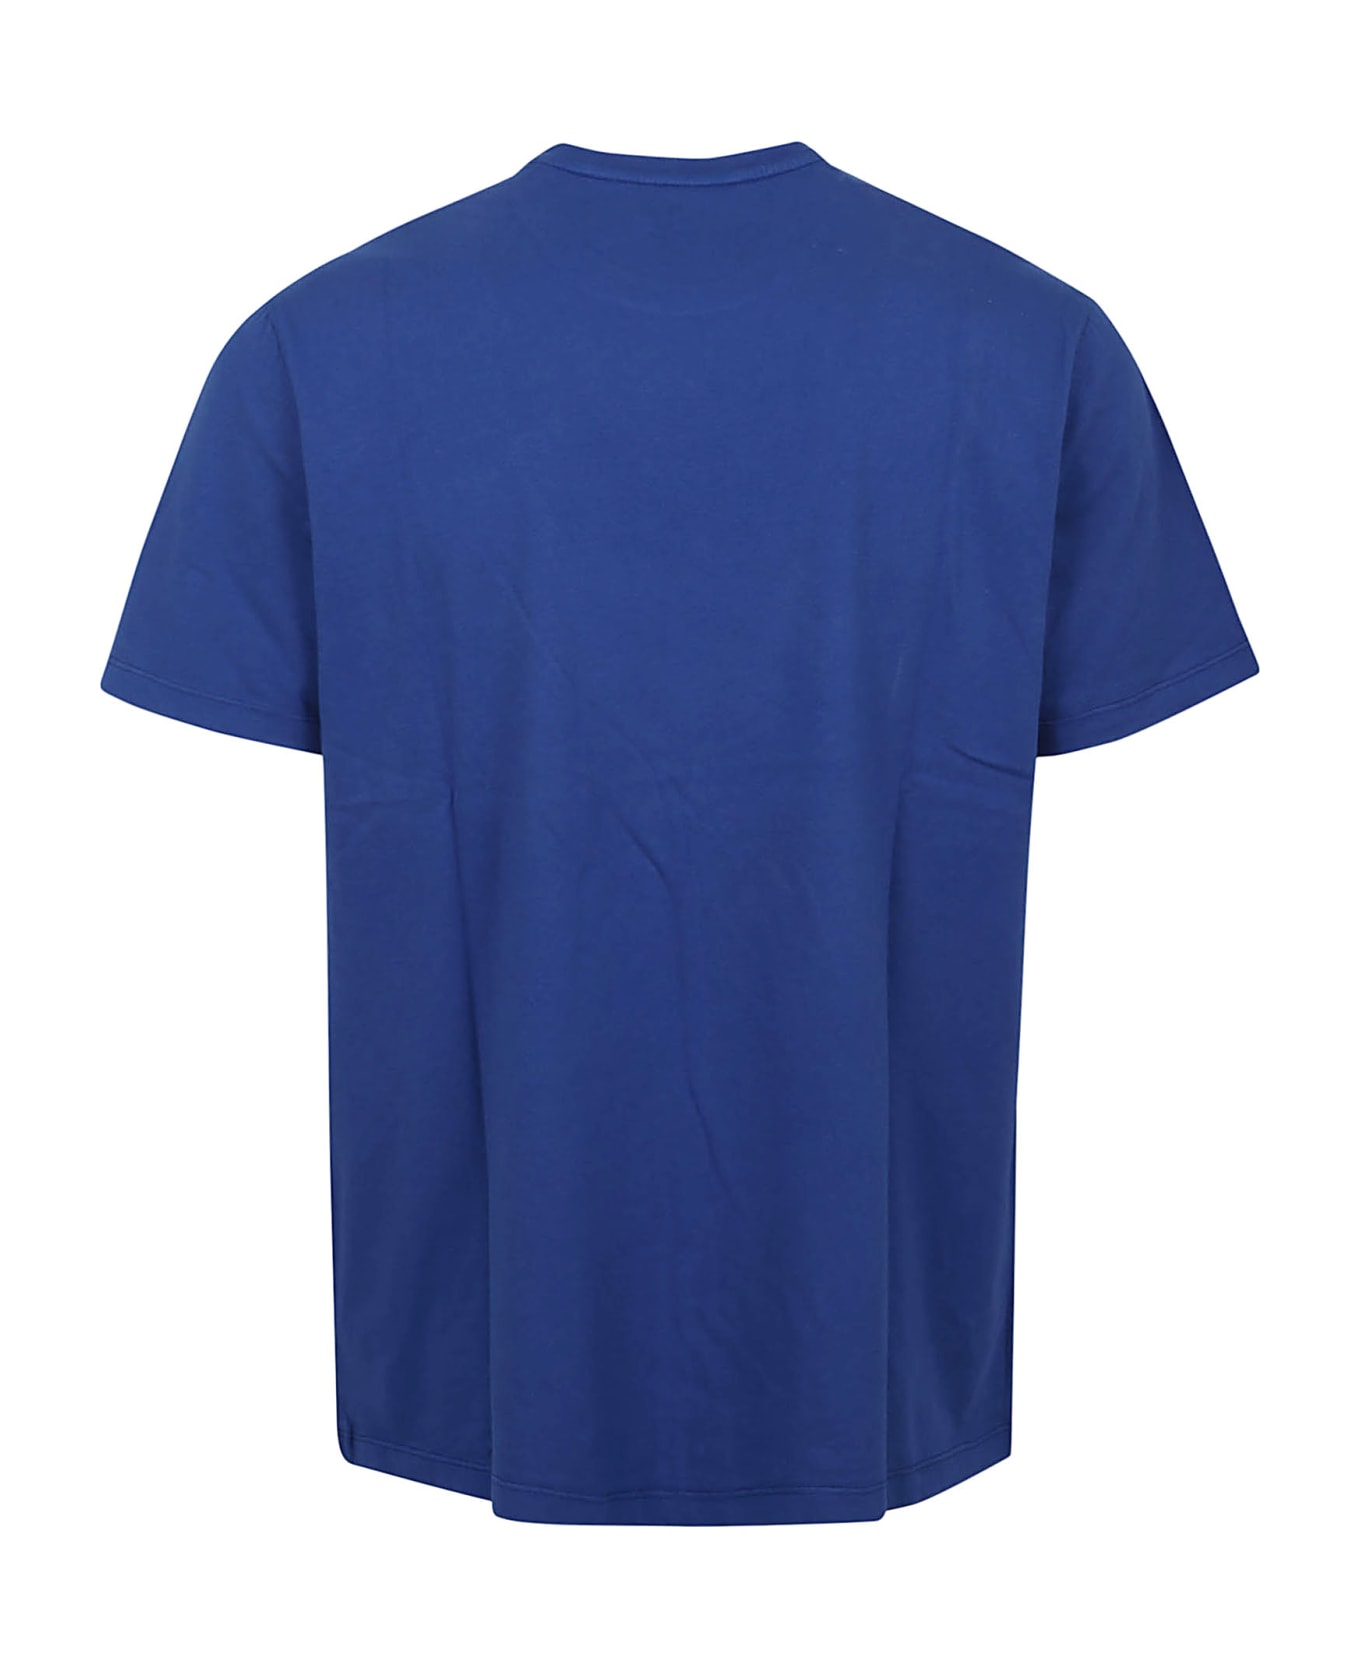 Majestic Filatures T-shirt - Bleu Roi シャツ